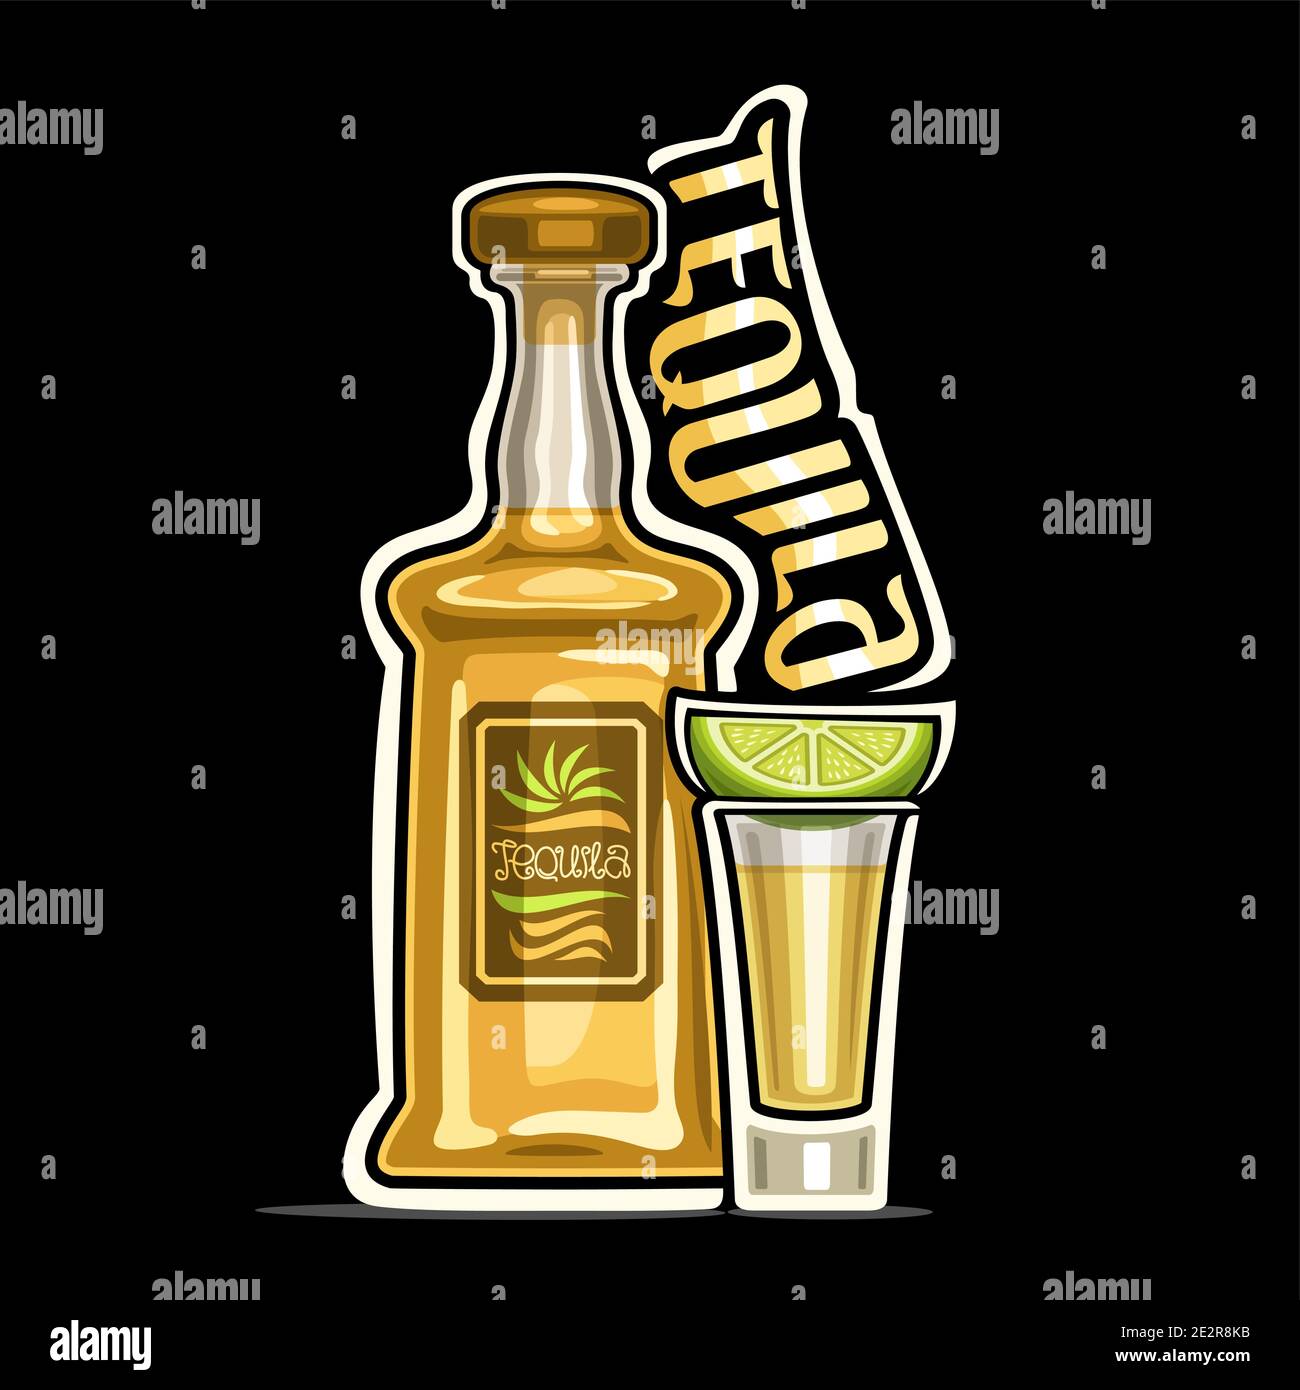 Vektor-Logo für Tequila, Umriss Illustration der gelben Flasche mit dekorativem Etikett und Vollglas Schuss mit Zitronenscheibe, Plakat mit einzigartigem Design Stock Vektor